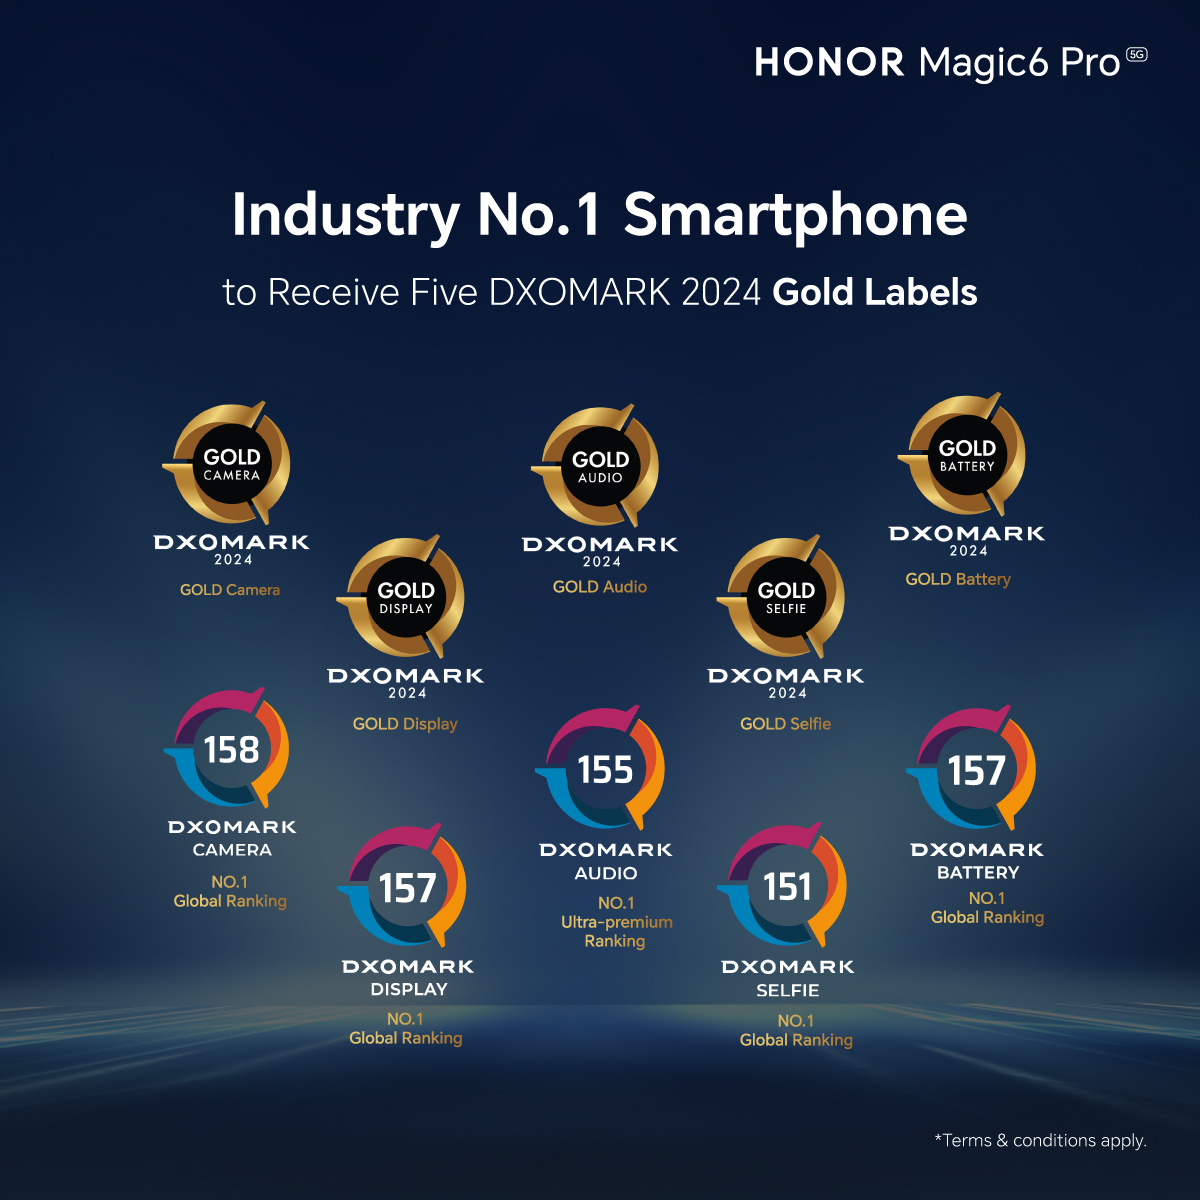 HONOR Magic6 Pro 3月28日全马开售，首销送总值高达1,197令吉礼品 28